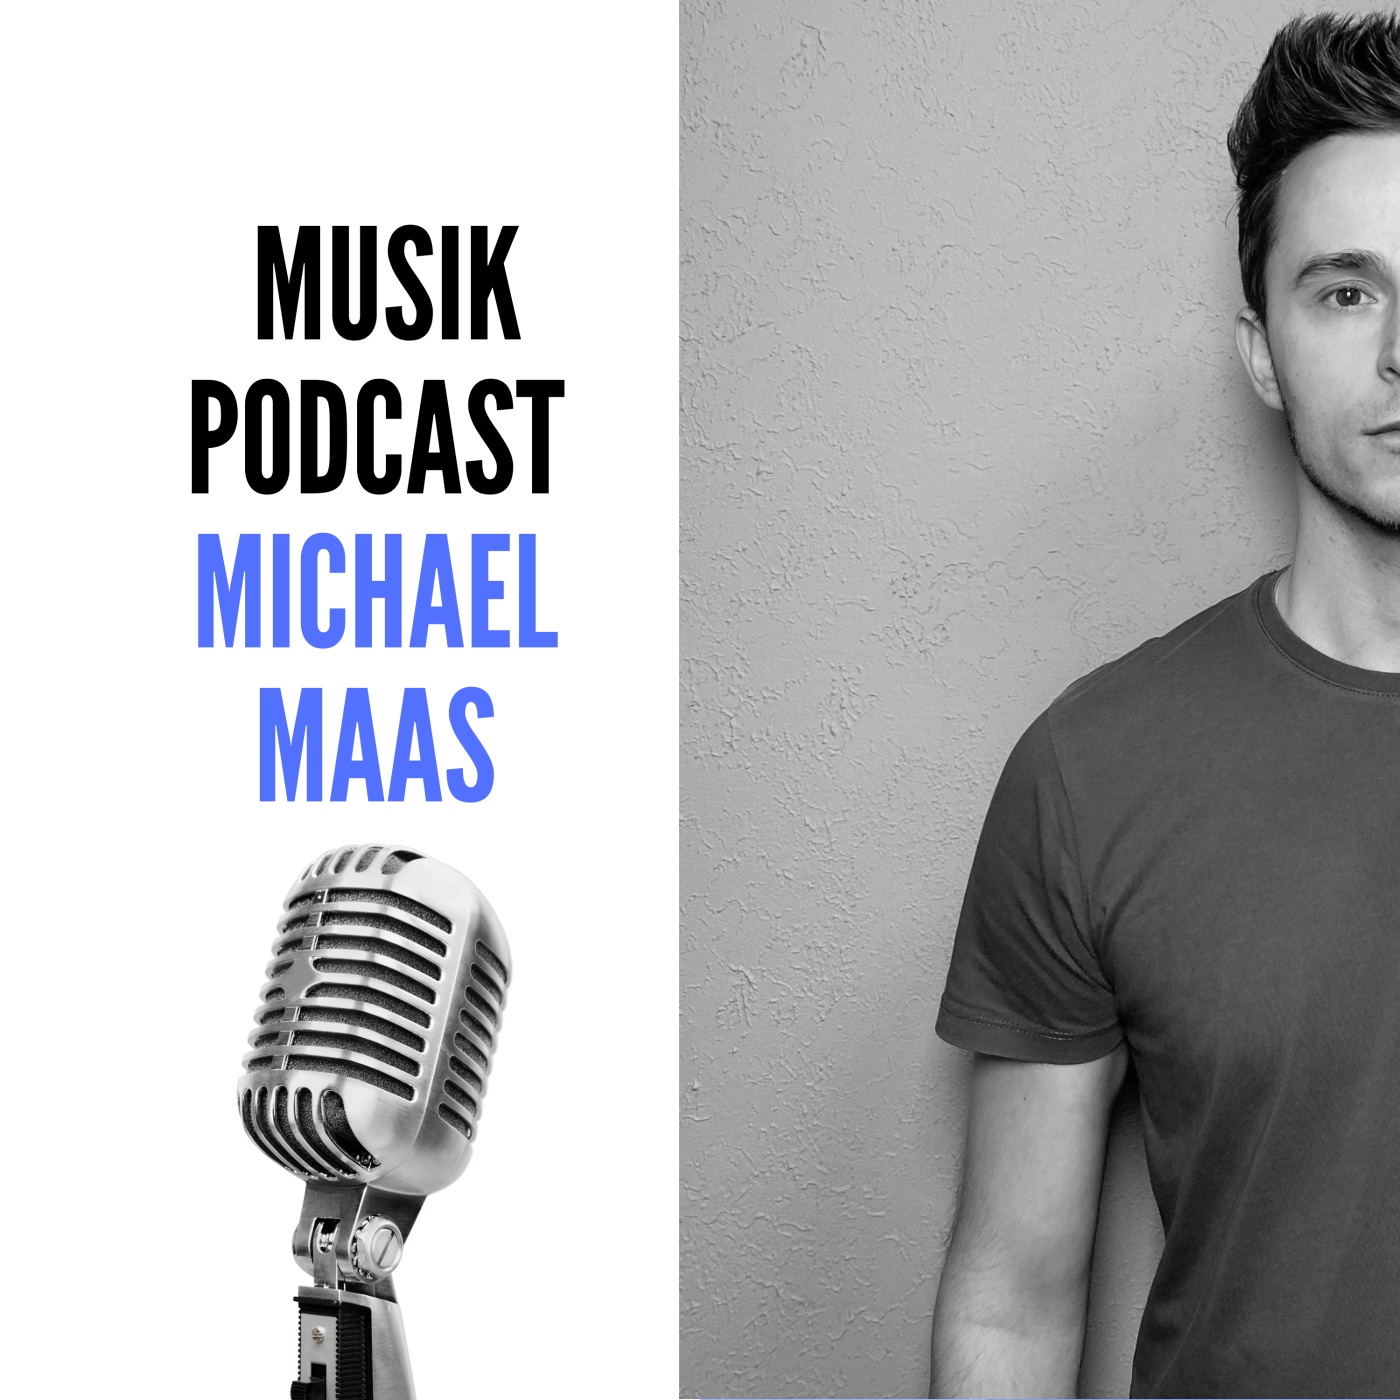 Musikpodcast Michael Maas